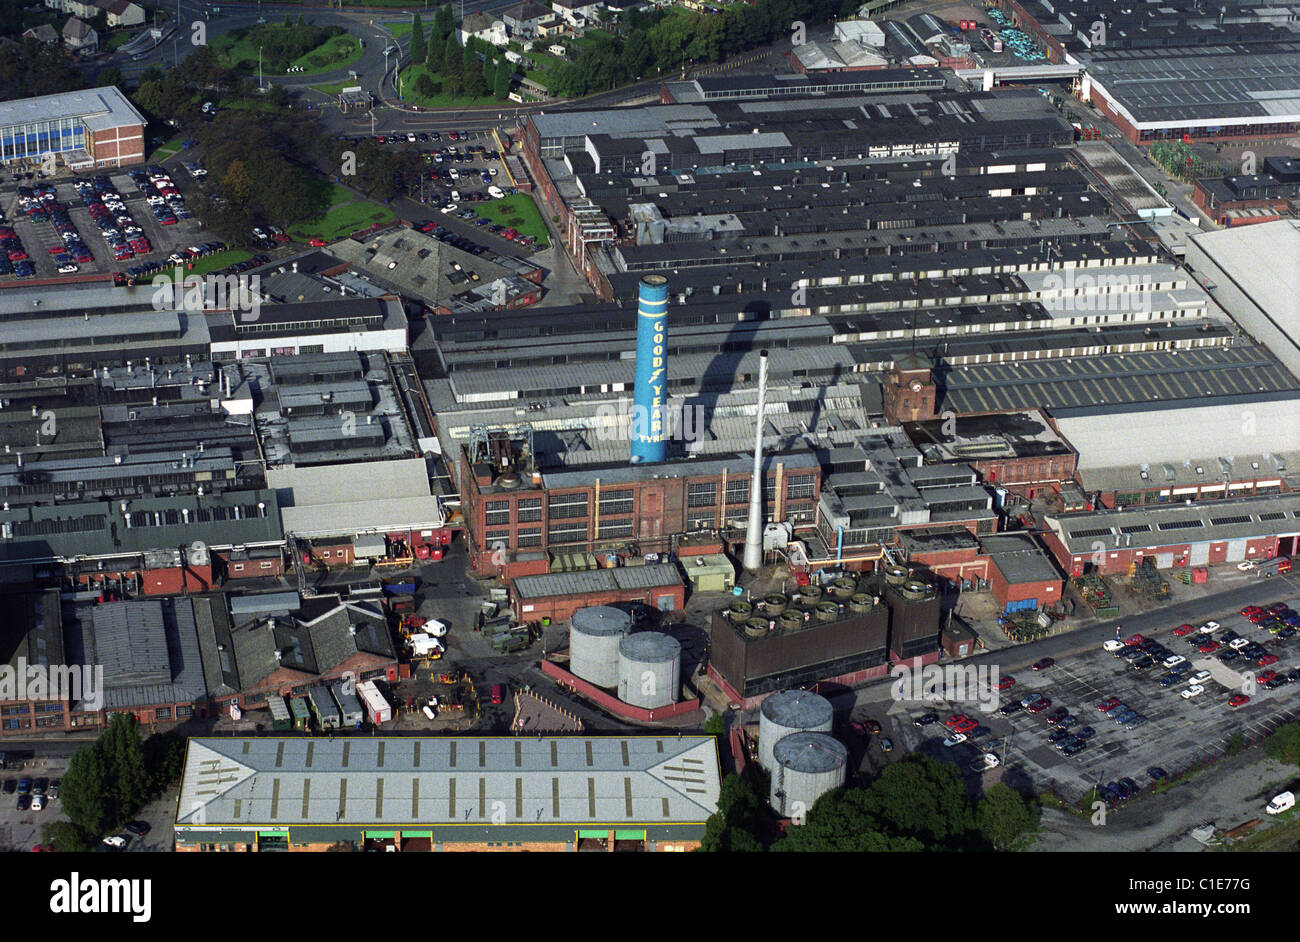 Luftaufnahme von Goodyear Reifenwerk Wolverhampton West Midlands England Uk, die jetzt abgerissen wurde Stockfoto